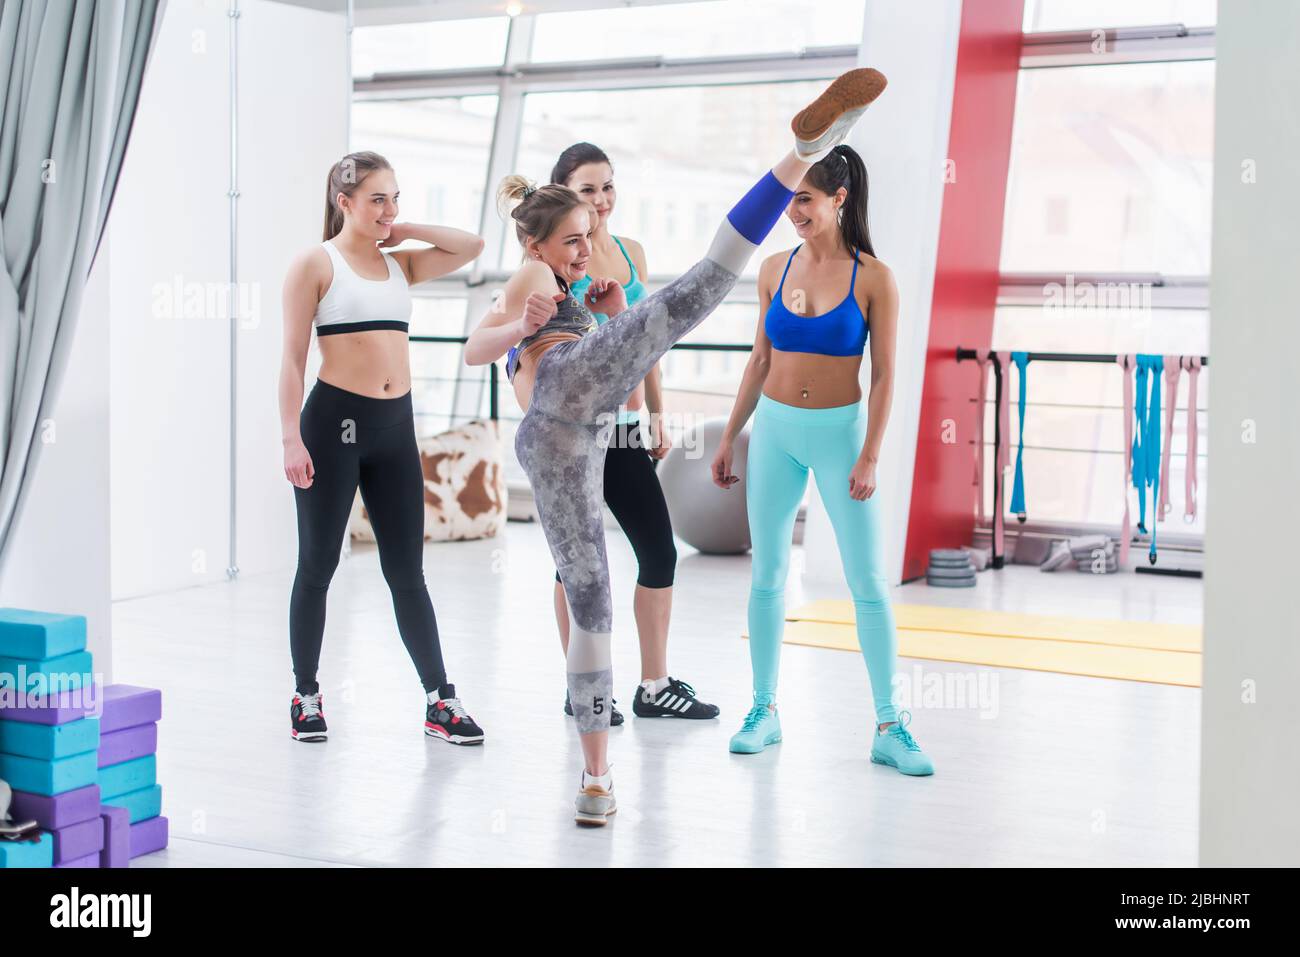 Attraktive junge Mädchen zeigt hohen Kick zu ihren Freunden, die um sie herum in Sport-BH und Leggings lächelnd entspannend nach dem Training in Sport cl Stockfoto